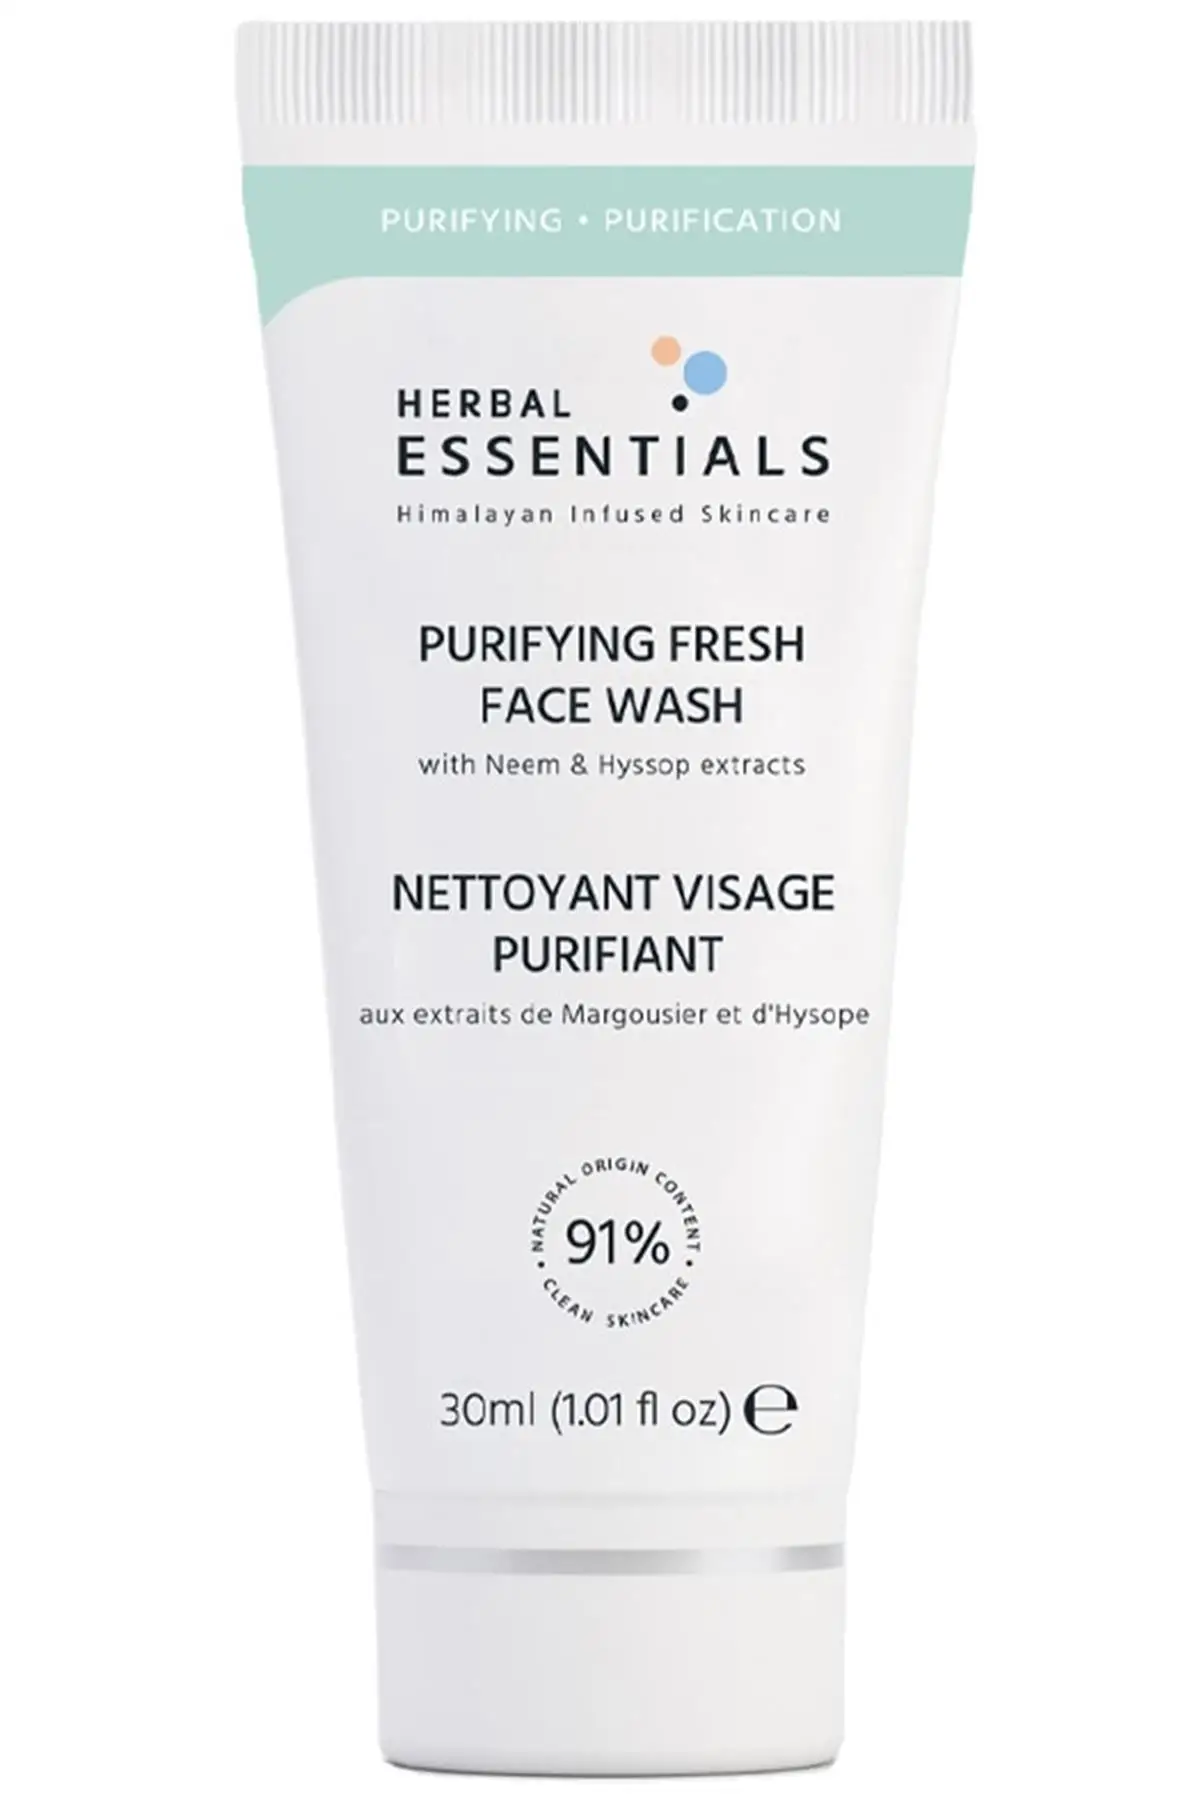 

Бренд: Herbal Essentials очиститель для лица, гель для мытья лица (экстракт 1x и мятное Масло), 30 мл, Категория: Face Te